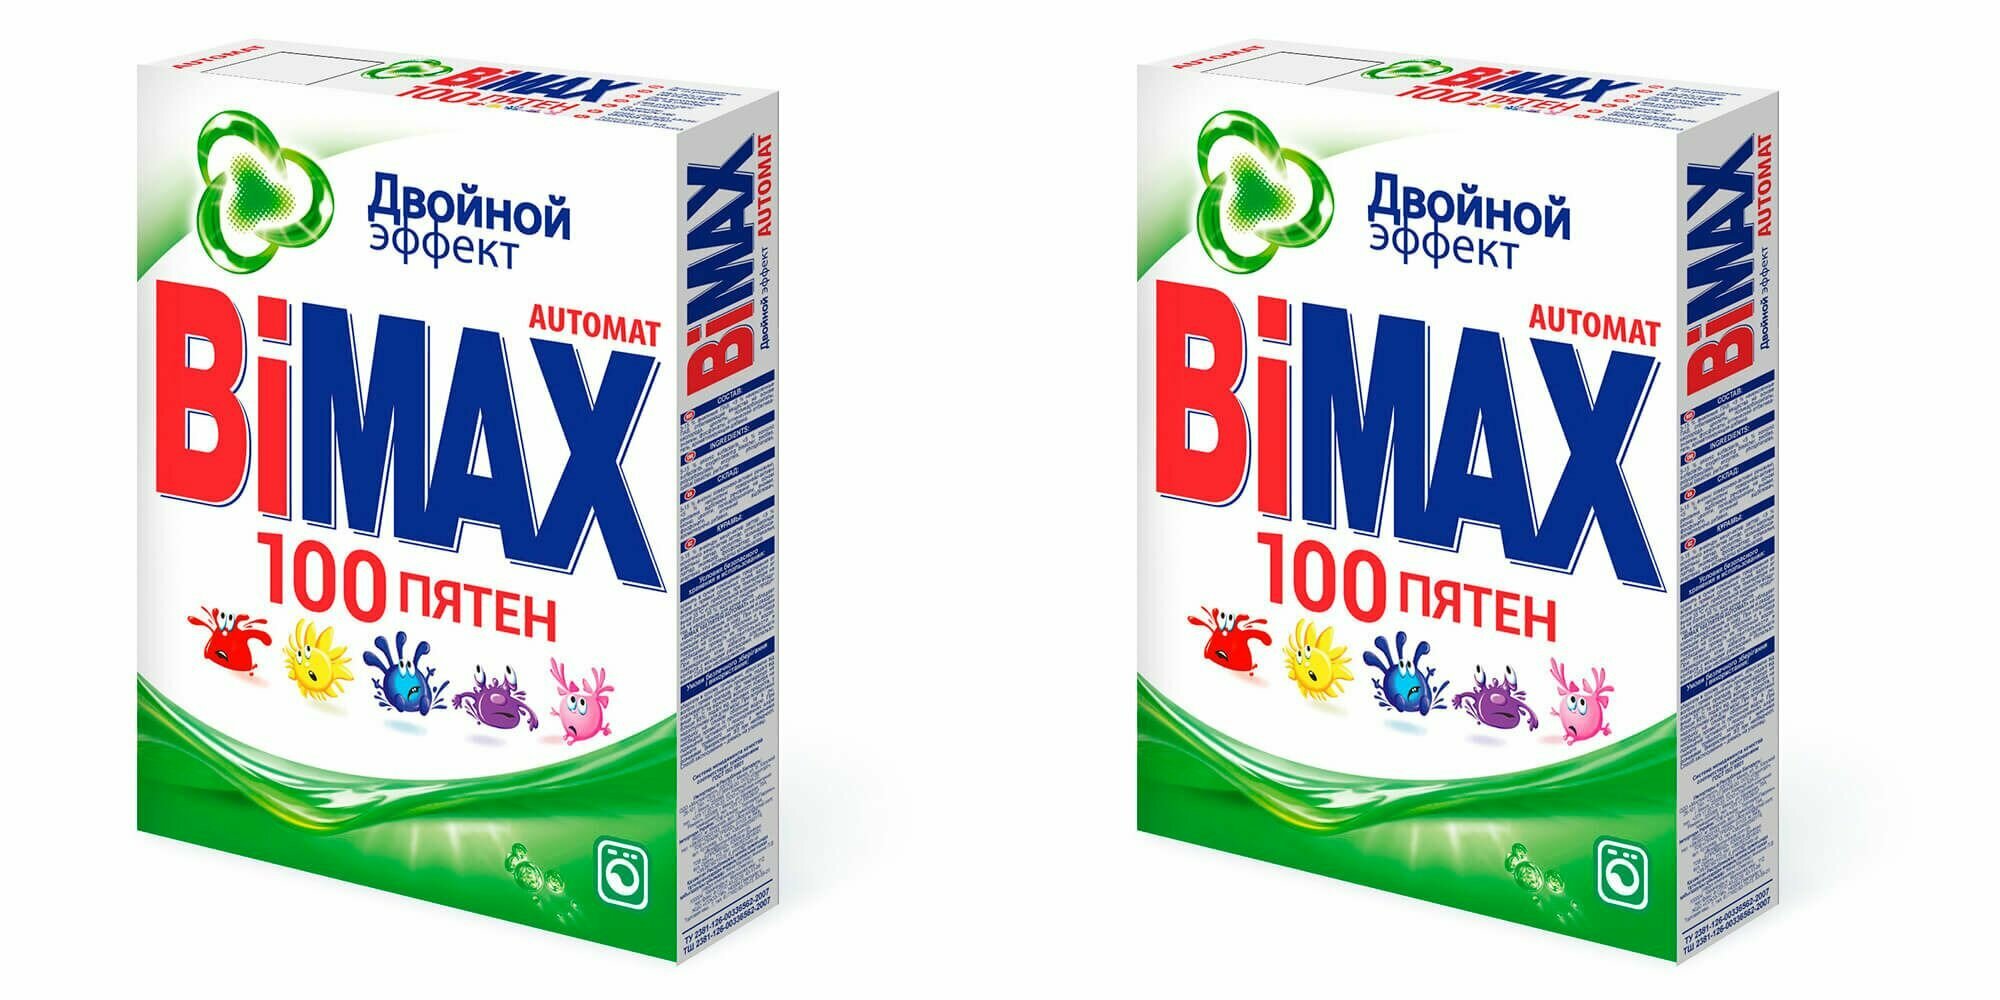 BiMax стиральный порошок "100 пятен", автомат, 400 г - 2 шт